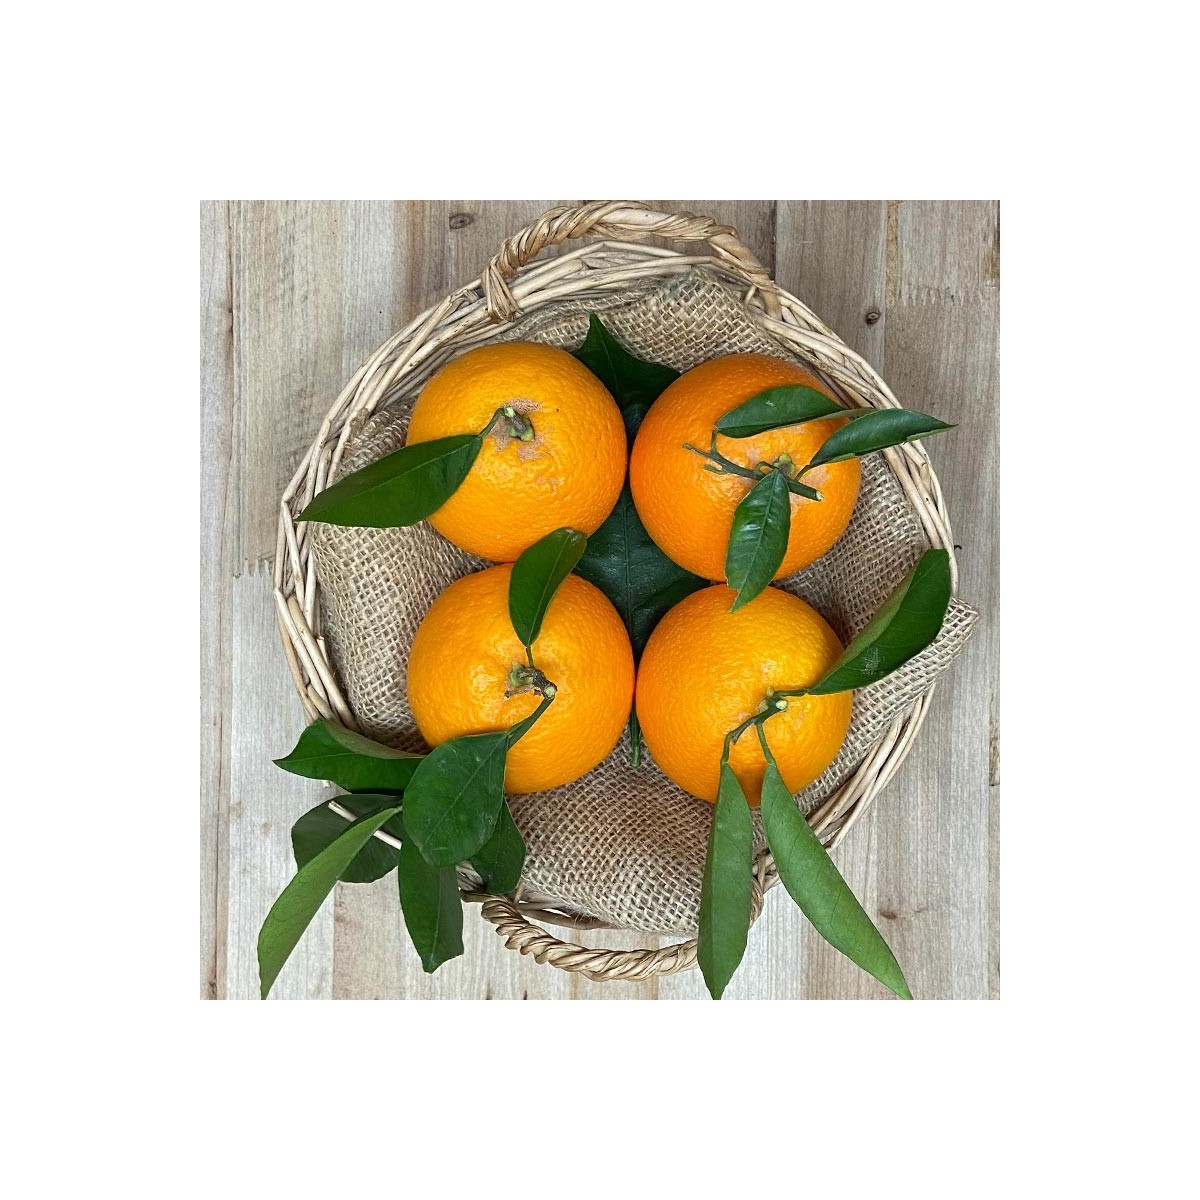 Naranjas de Zumo - - Cítricos -1- Lo mejor de la fruta